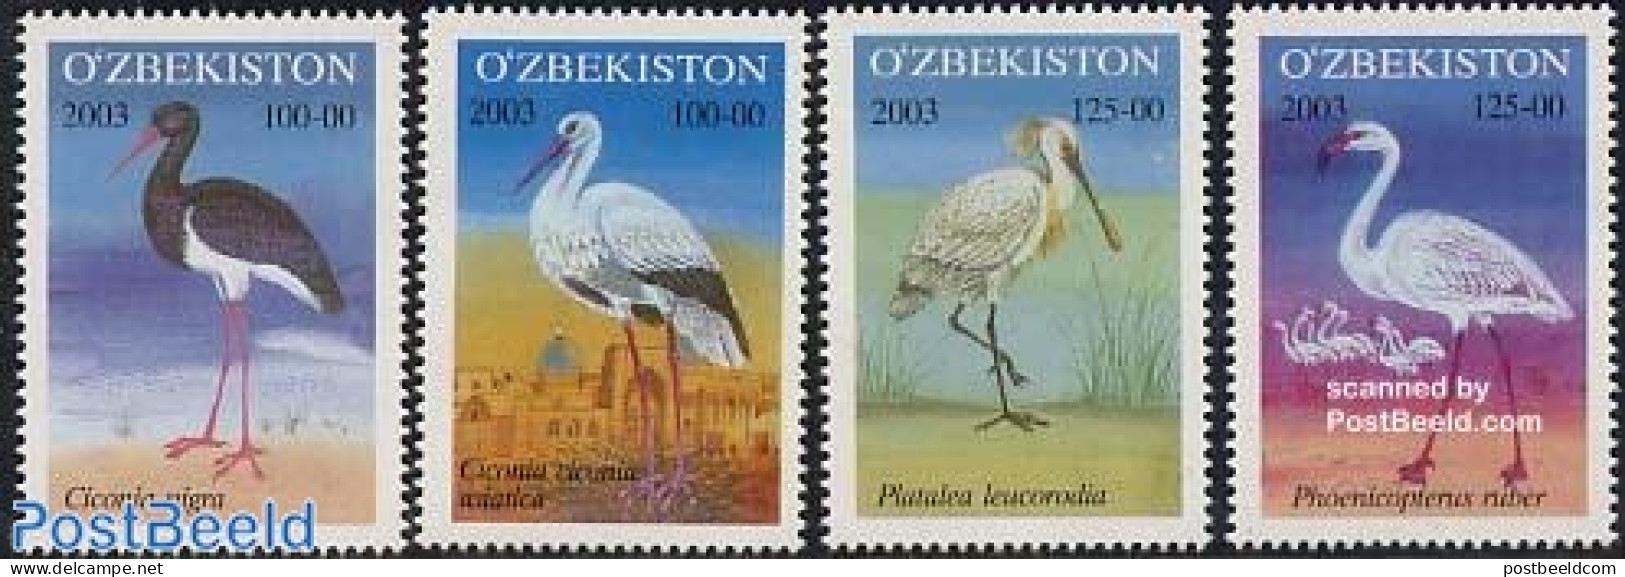 Uzbekistan 2003 Birds 4v, Mint NH, Nature - Birds - Uzbekistan